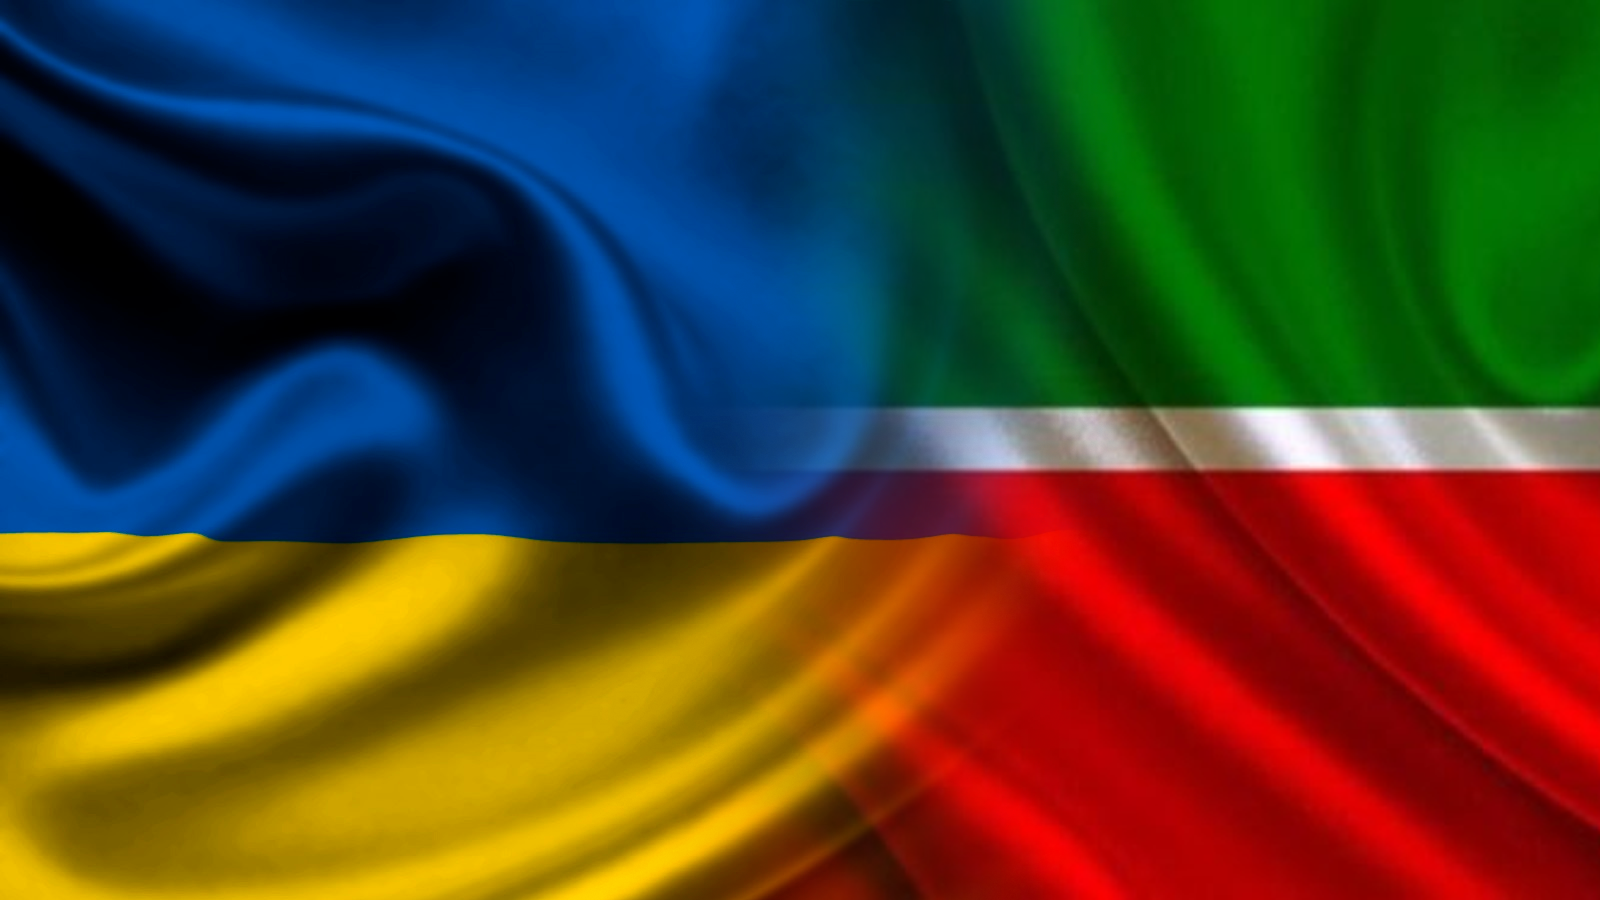 Правительство Татарстана в изгнании обратилась к президенту Украины и Верховной Раде с просьбой признать независимость Татарстана